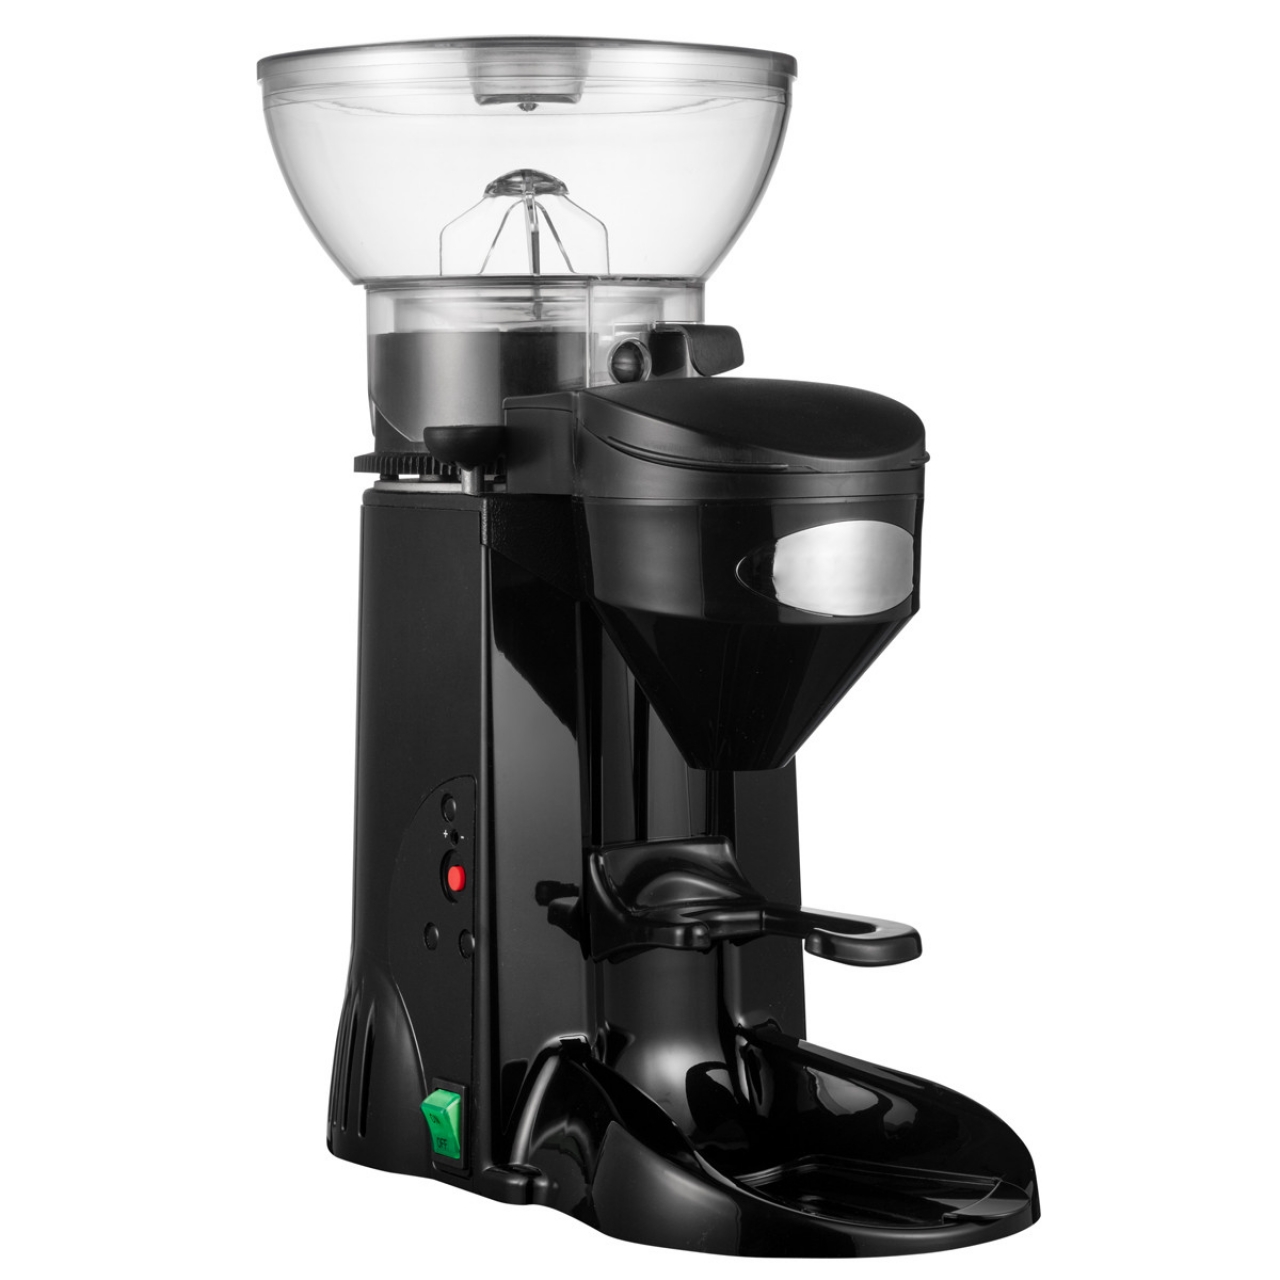 Coffee grinder 1kg